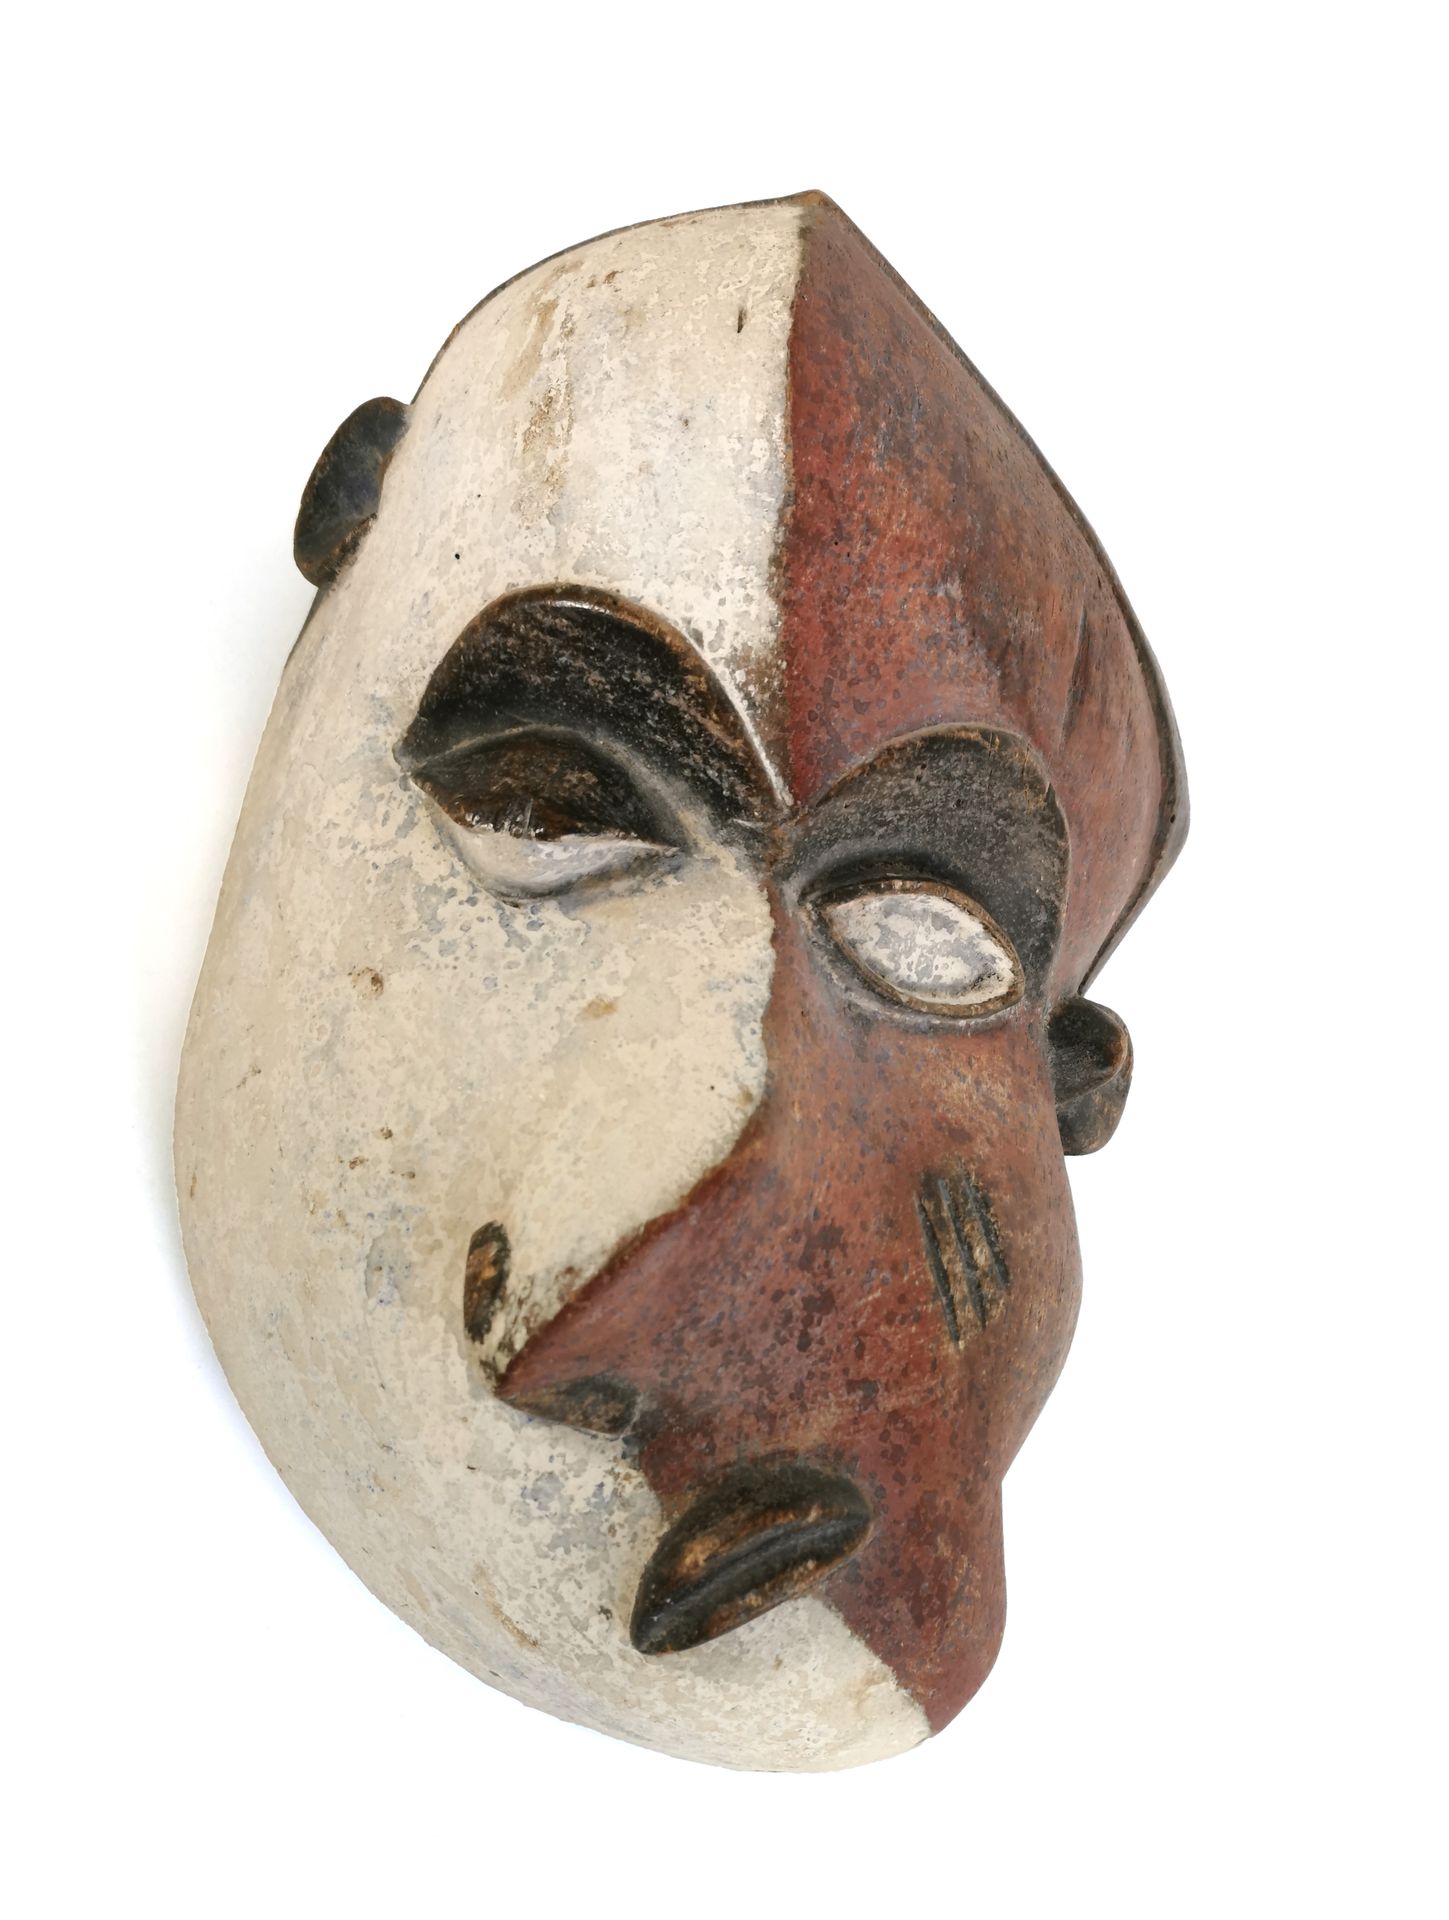 Null PENDE-Maske - Demokratische Republik Kongo

Maske, die als "Krankheitsmaske&hellip;